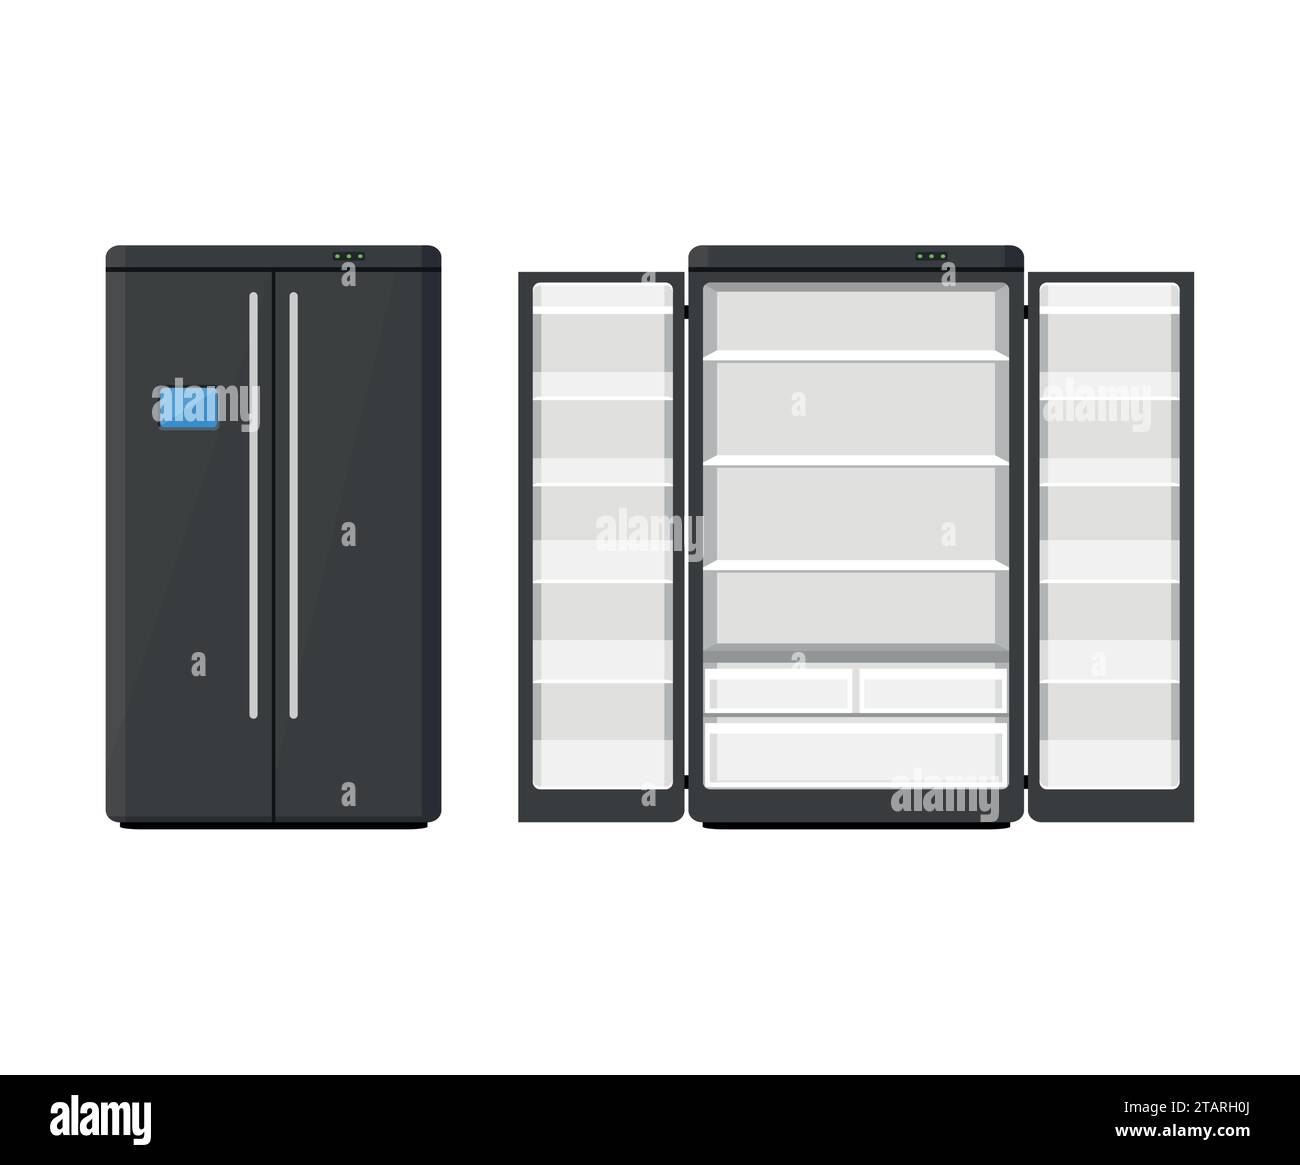 Schwarzer moderner Haushaltsgeräte-Kühlschrank mit zwei Türen isoliert auf weißem Hintergrund. Kühlschrank für elektronische Geräte geöffnet und geschlossen. Haushaltsgerät Stock Vektor